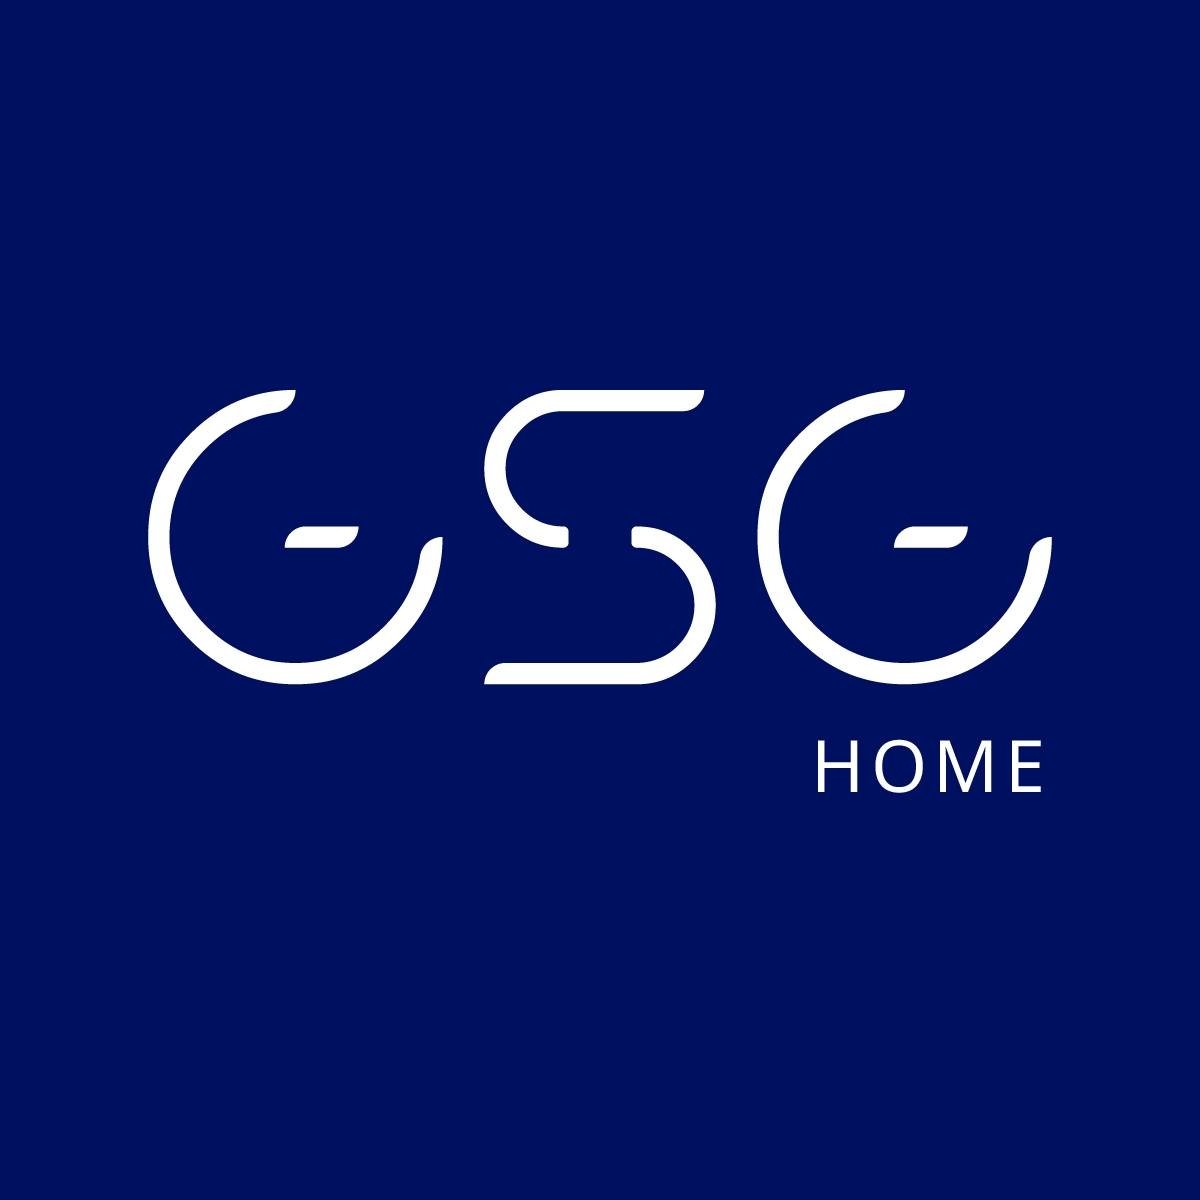 GSG home